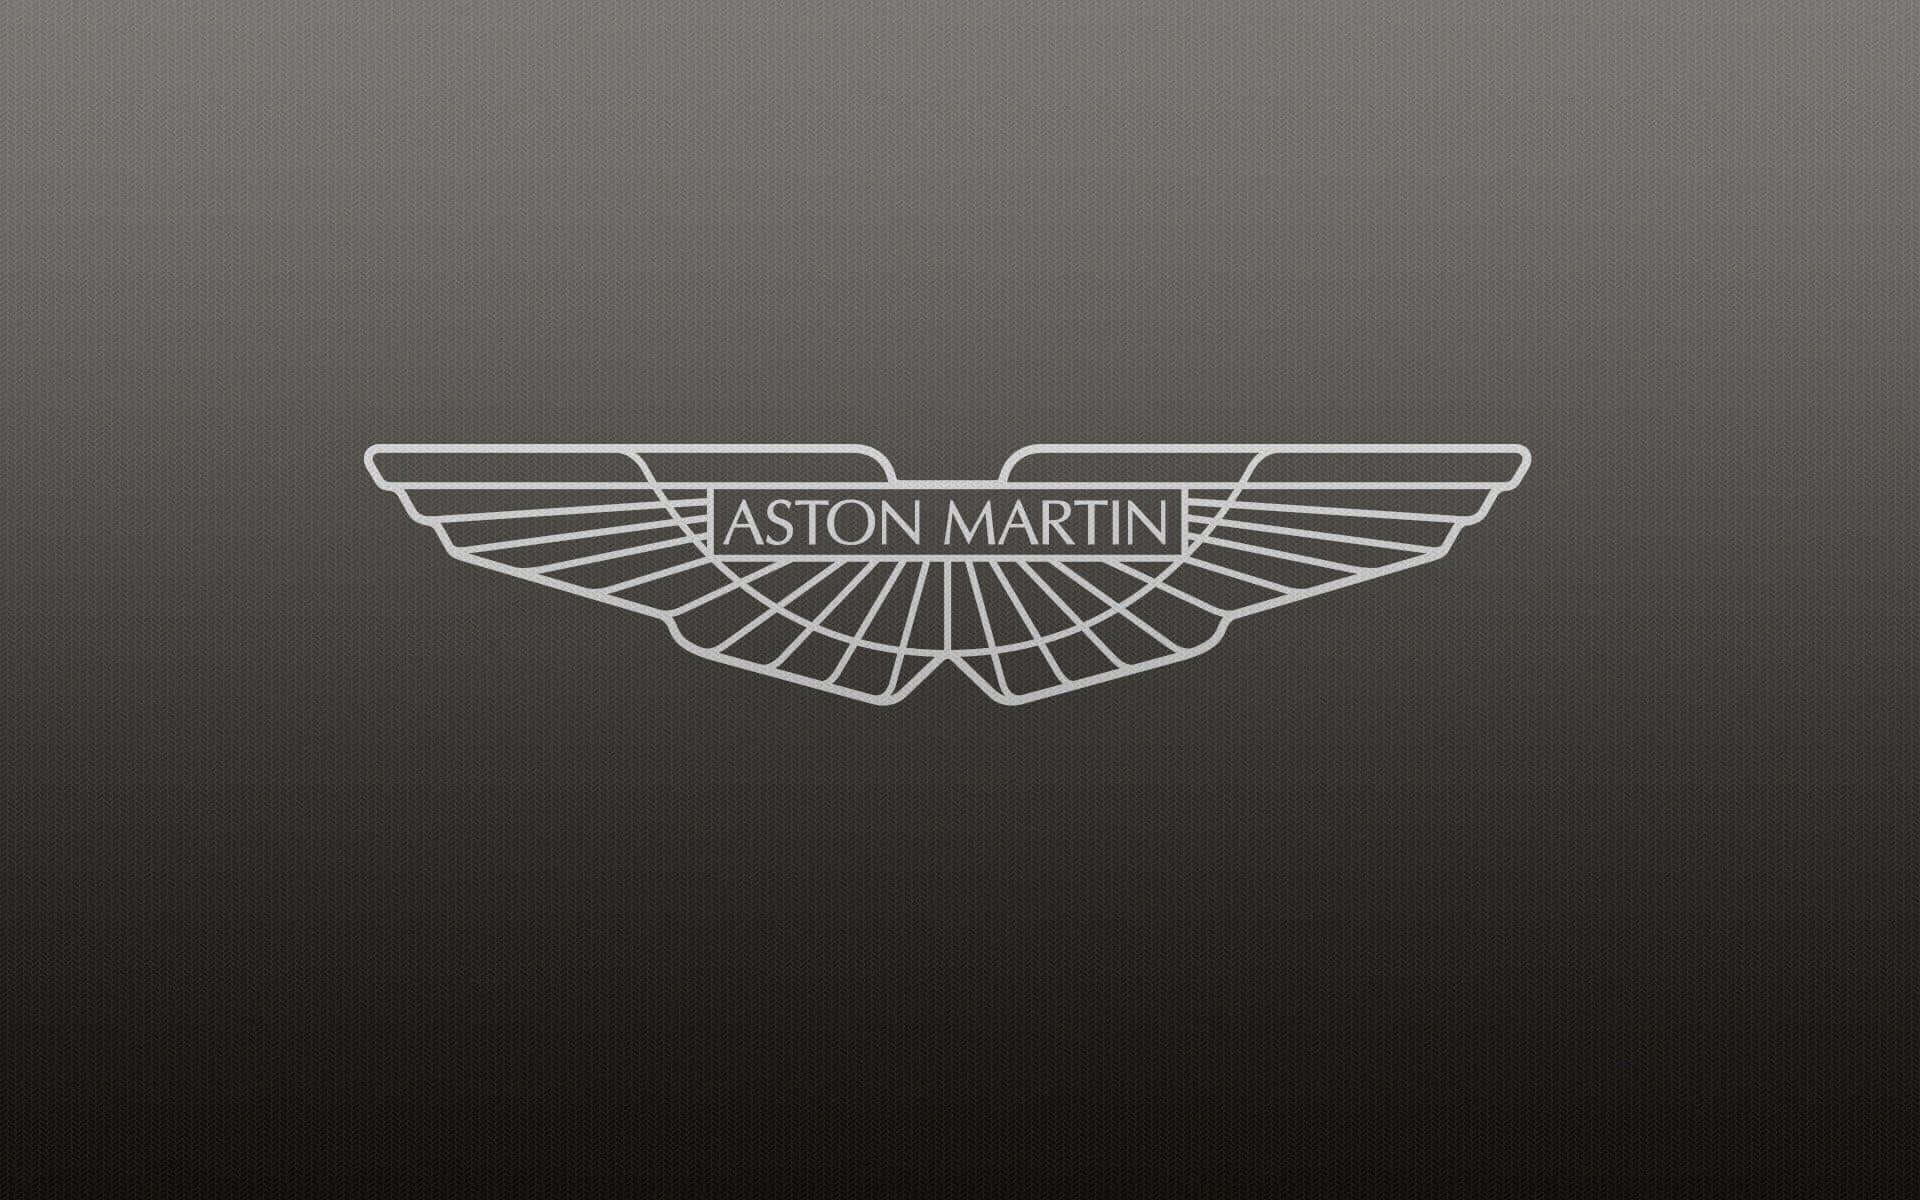 Spüredie Kraft Des Aston Martin